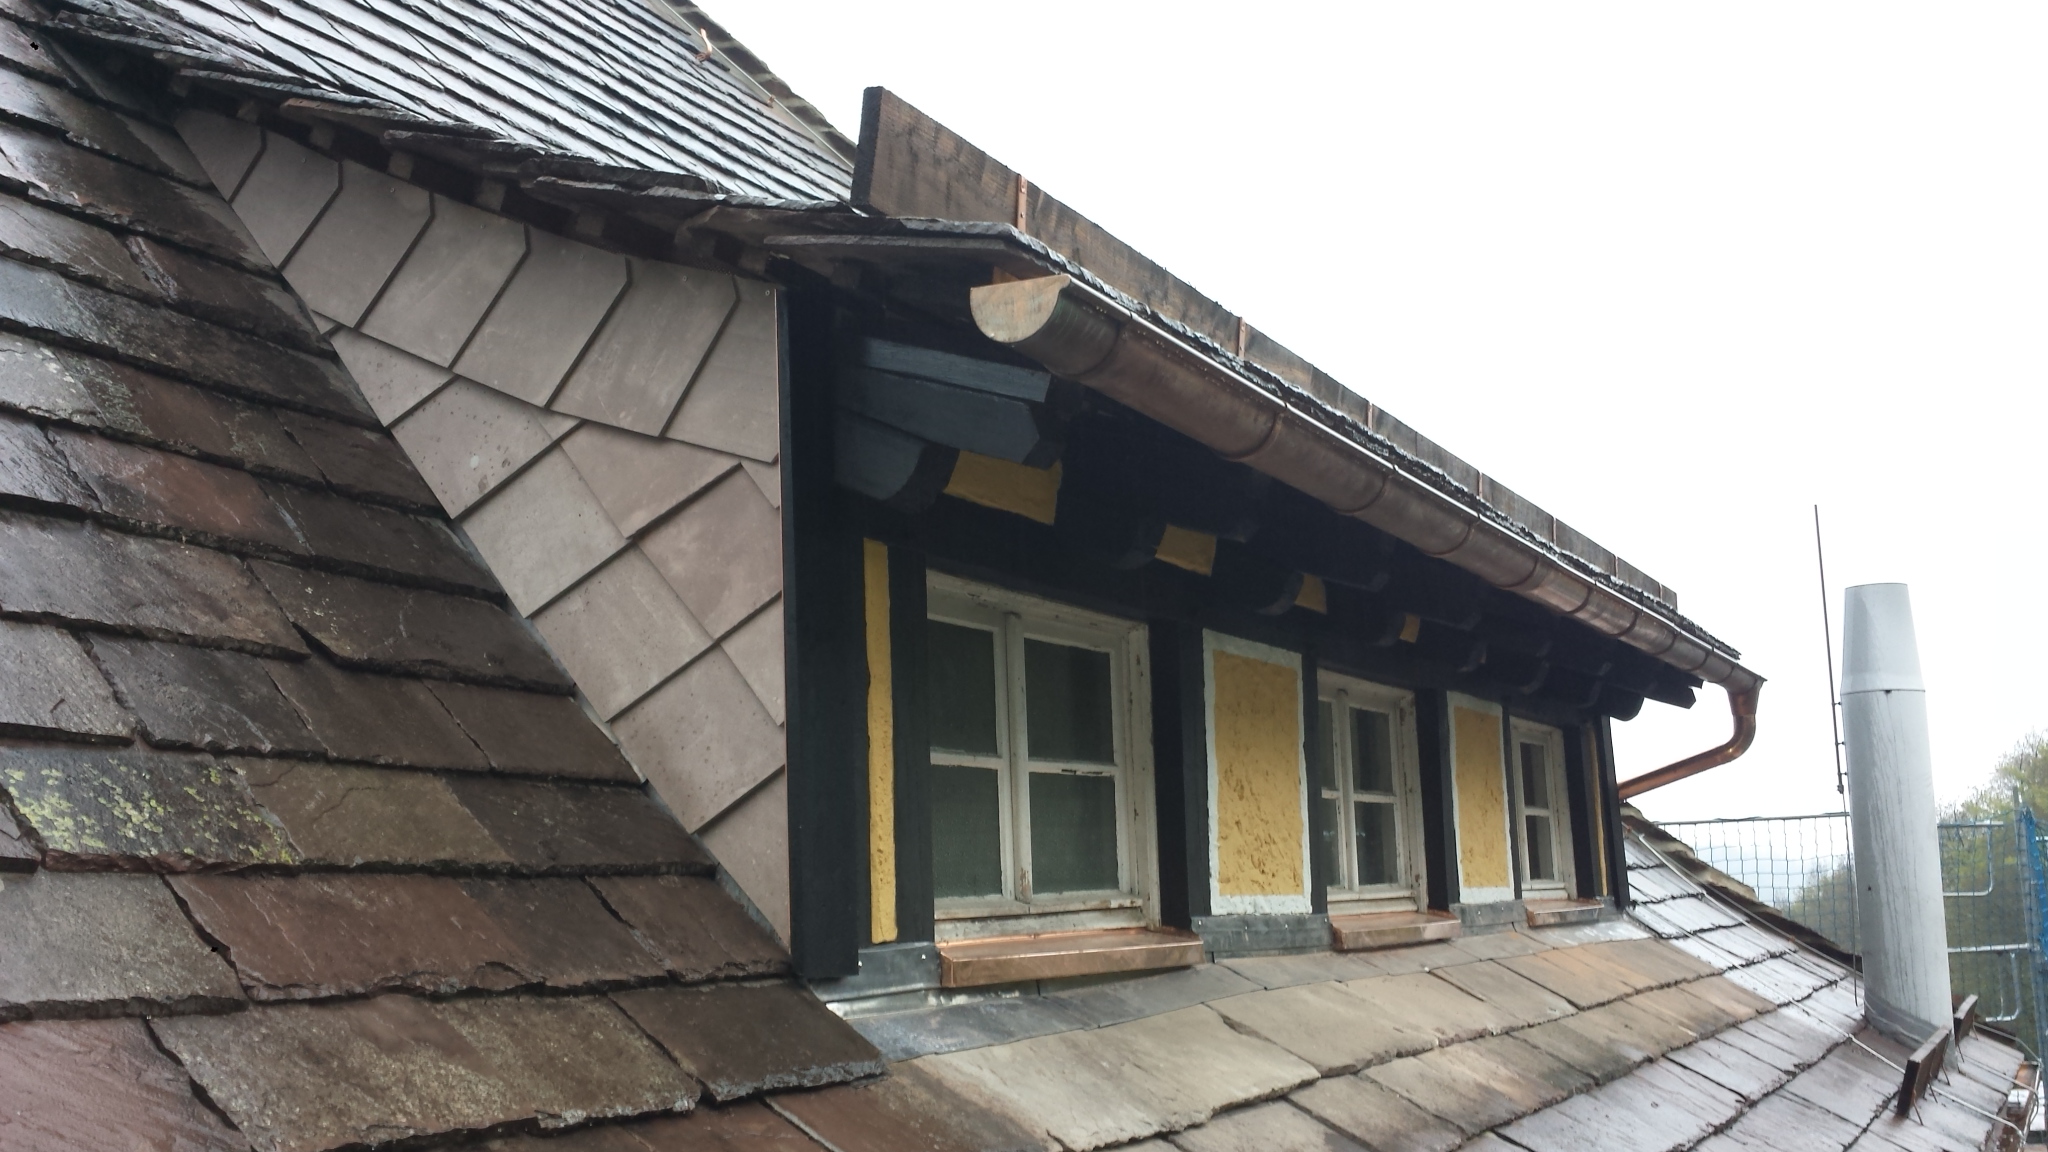 Rekonstruktion alter Dachgauben